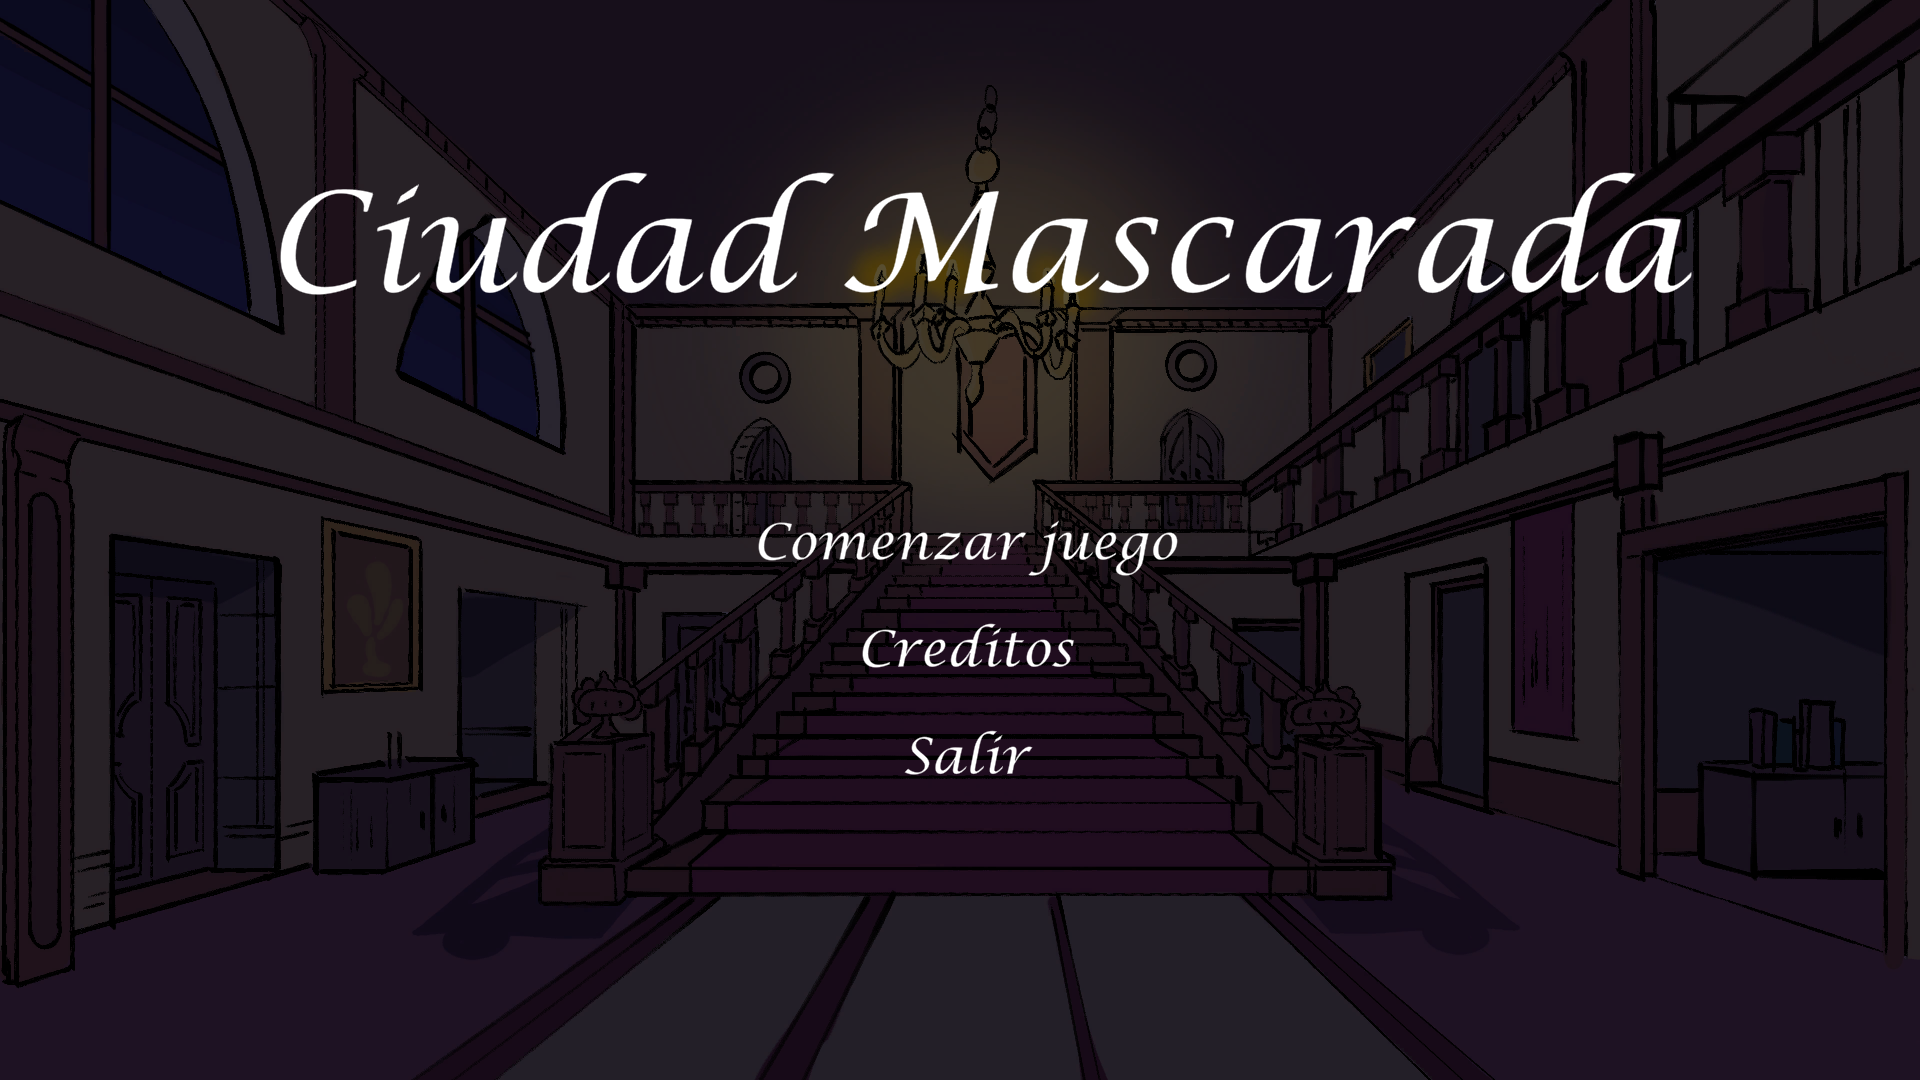 Ciudad Mascarada